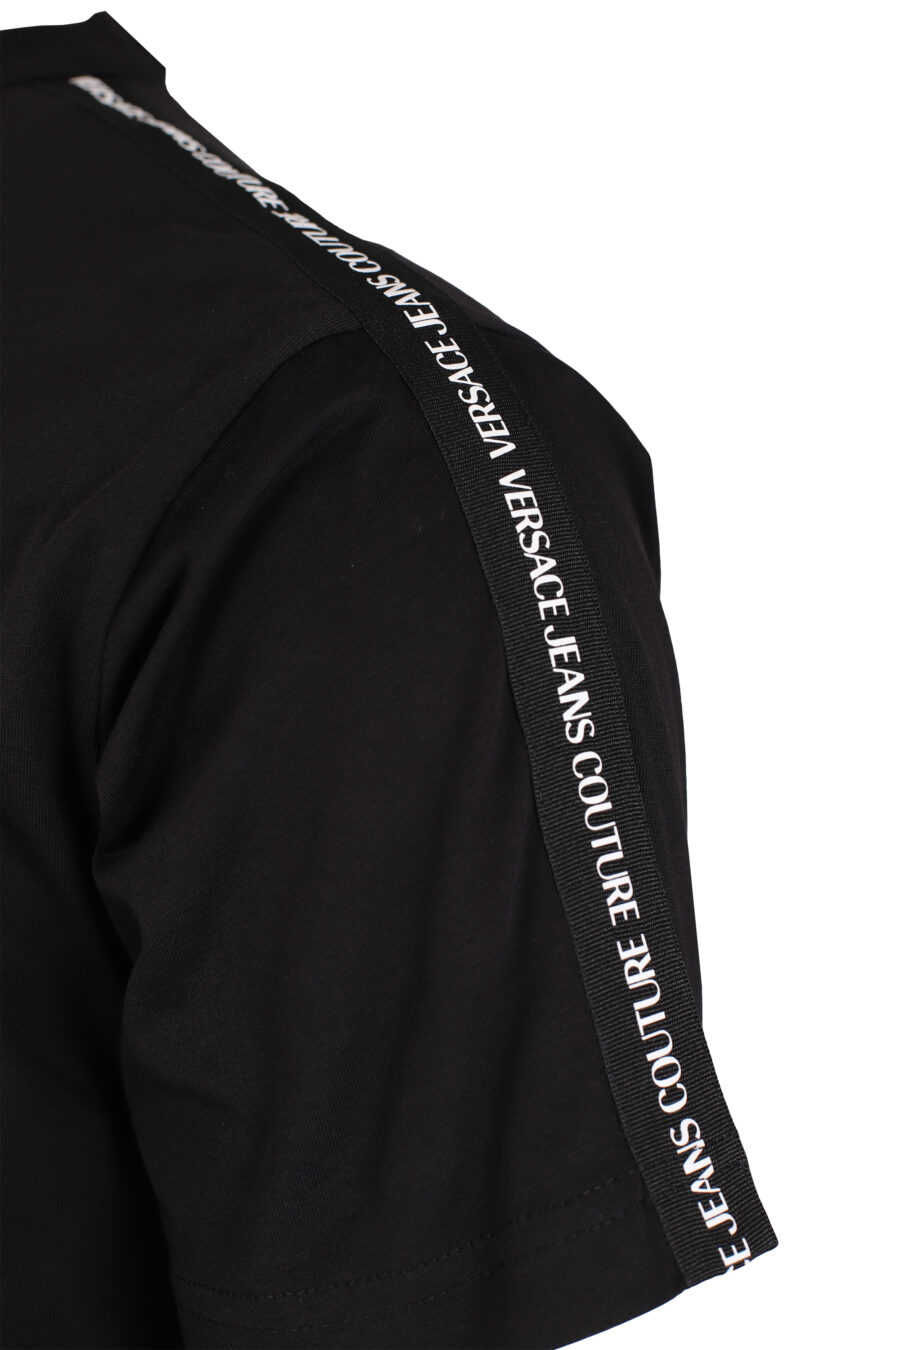 T-shirt noir avec mini logo sur les épaules - IMG 4013